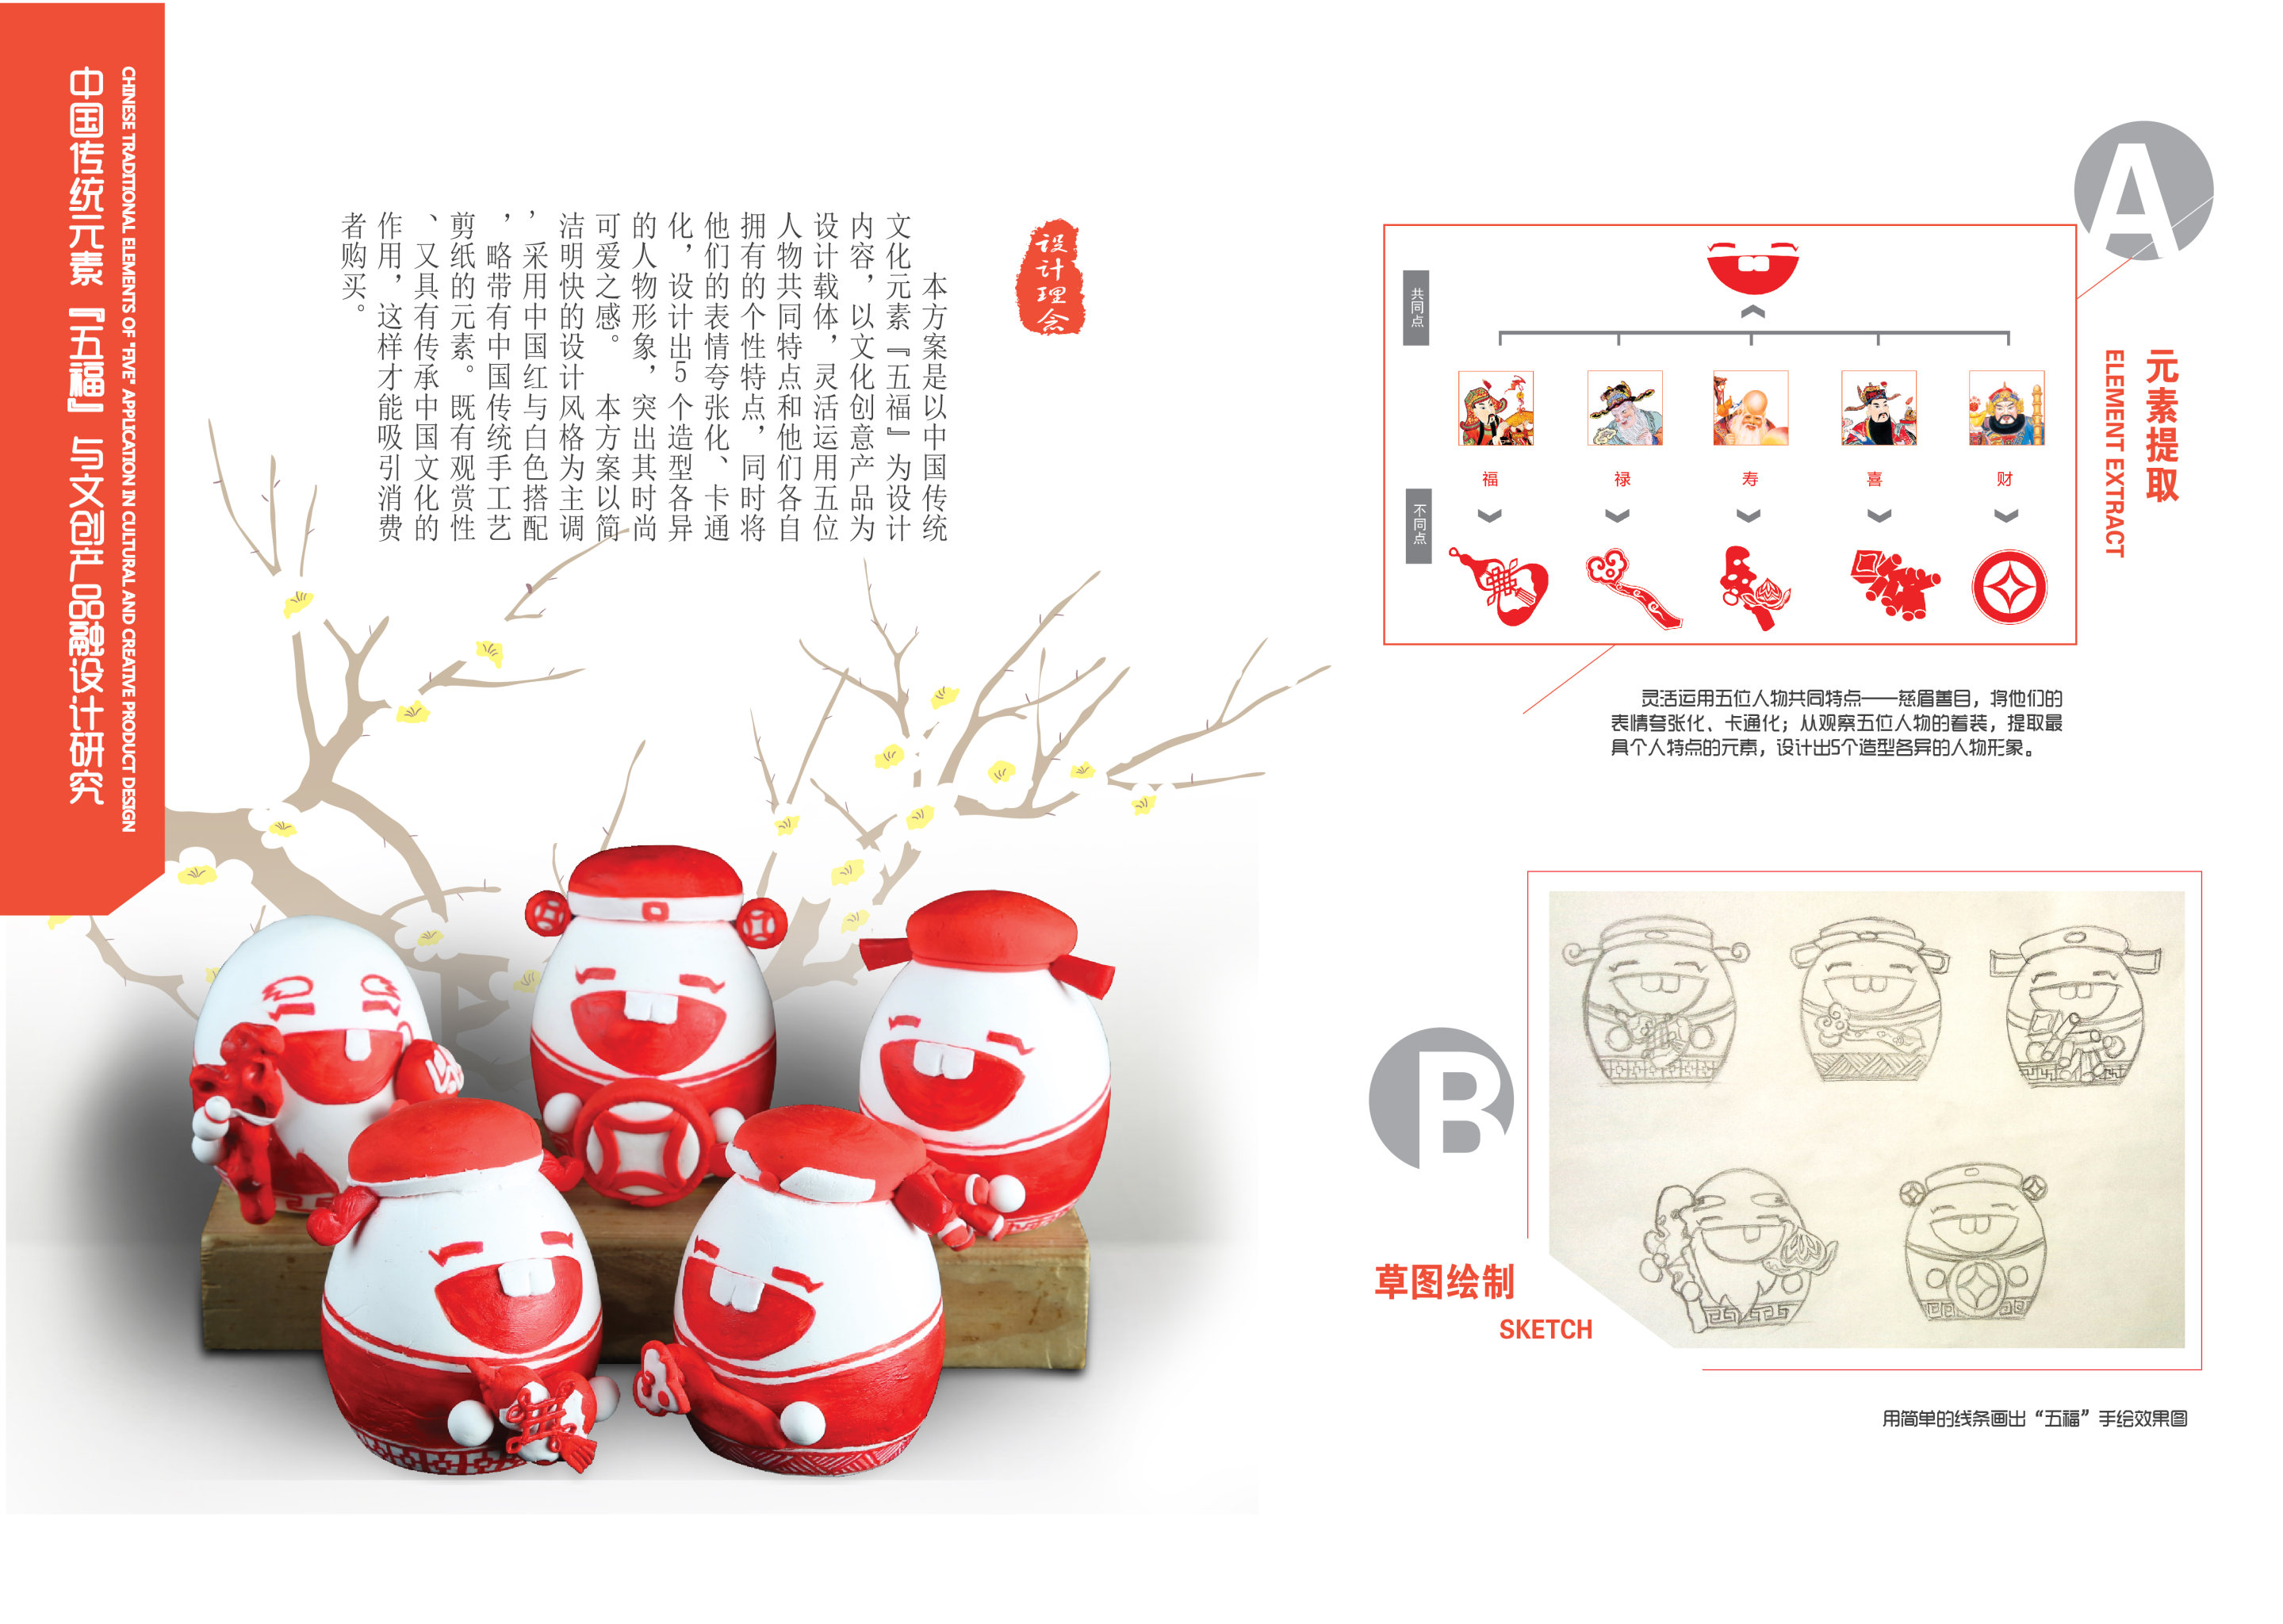 中国传统元素"五福"与文创产品融合设计研